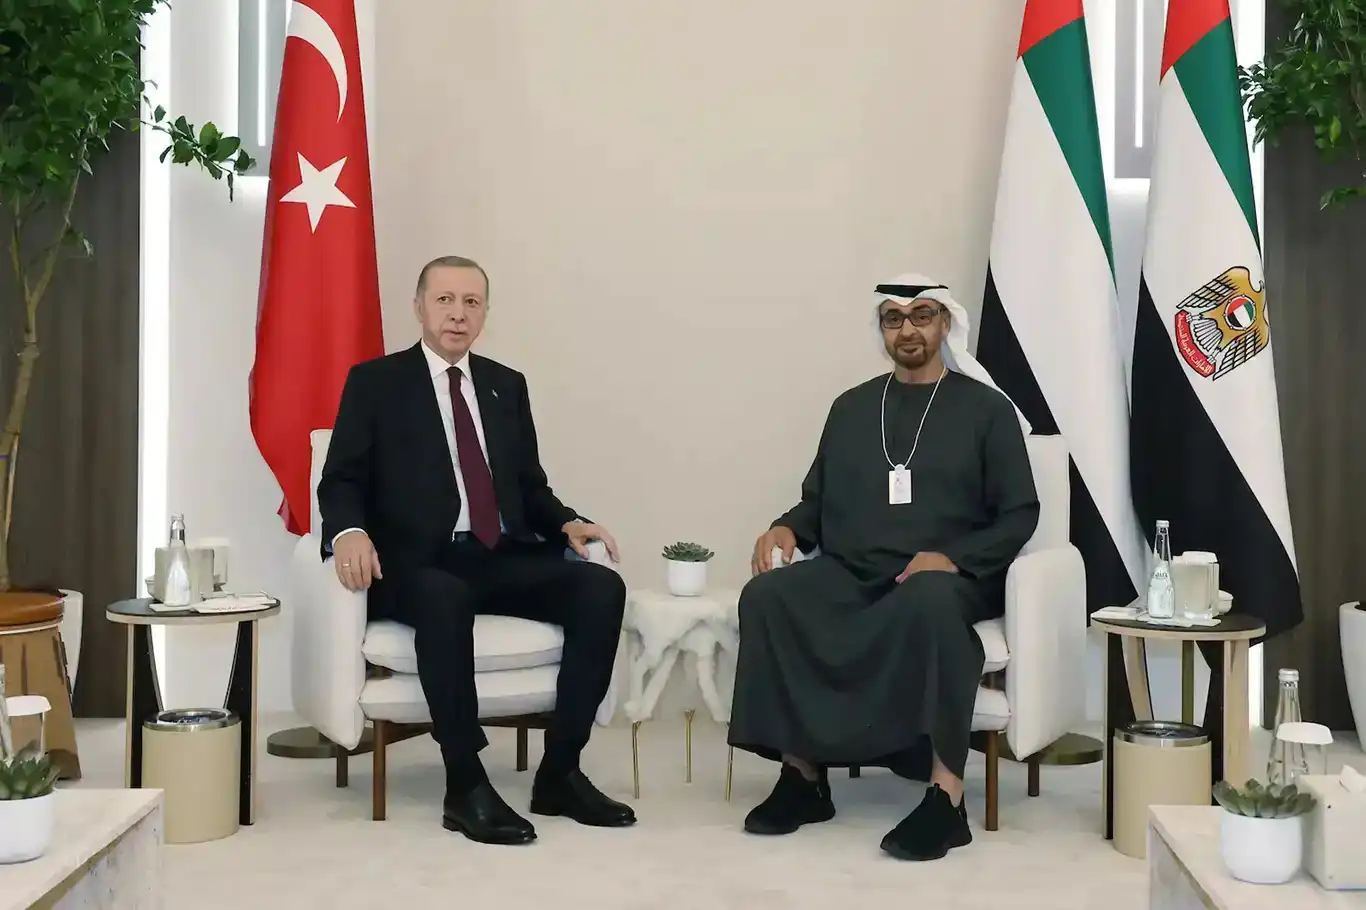 الرئيس التركي أردوغان يجري اتصالاً هاتفياً مع رئيس دولة الإمارات العربية المتحدة آل نهيان